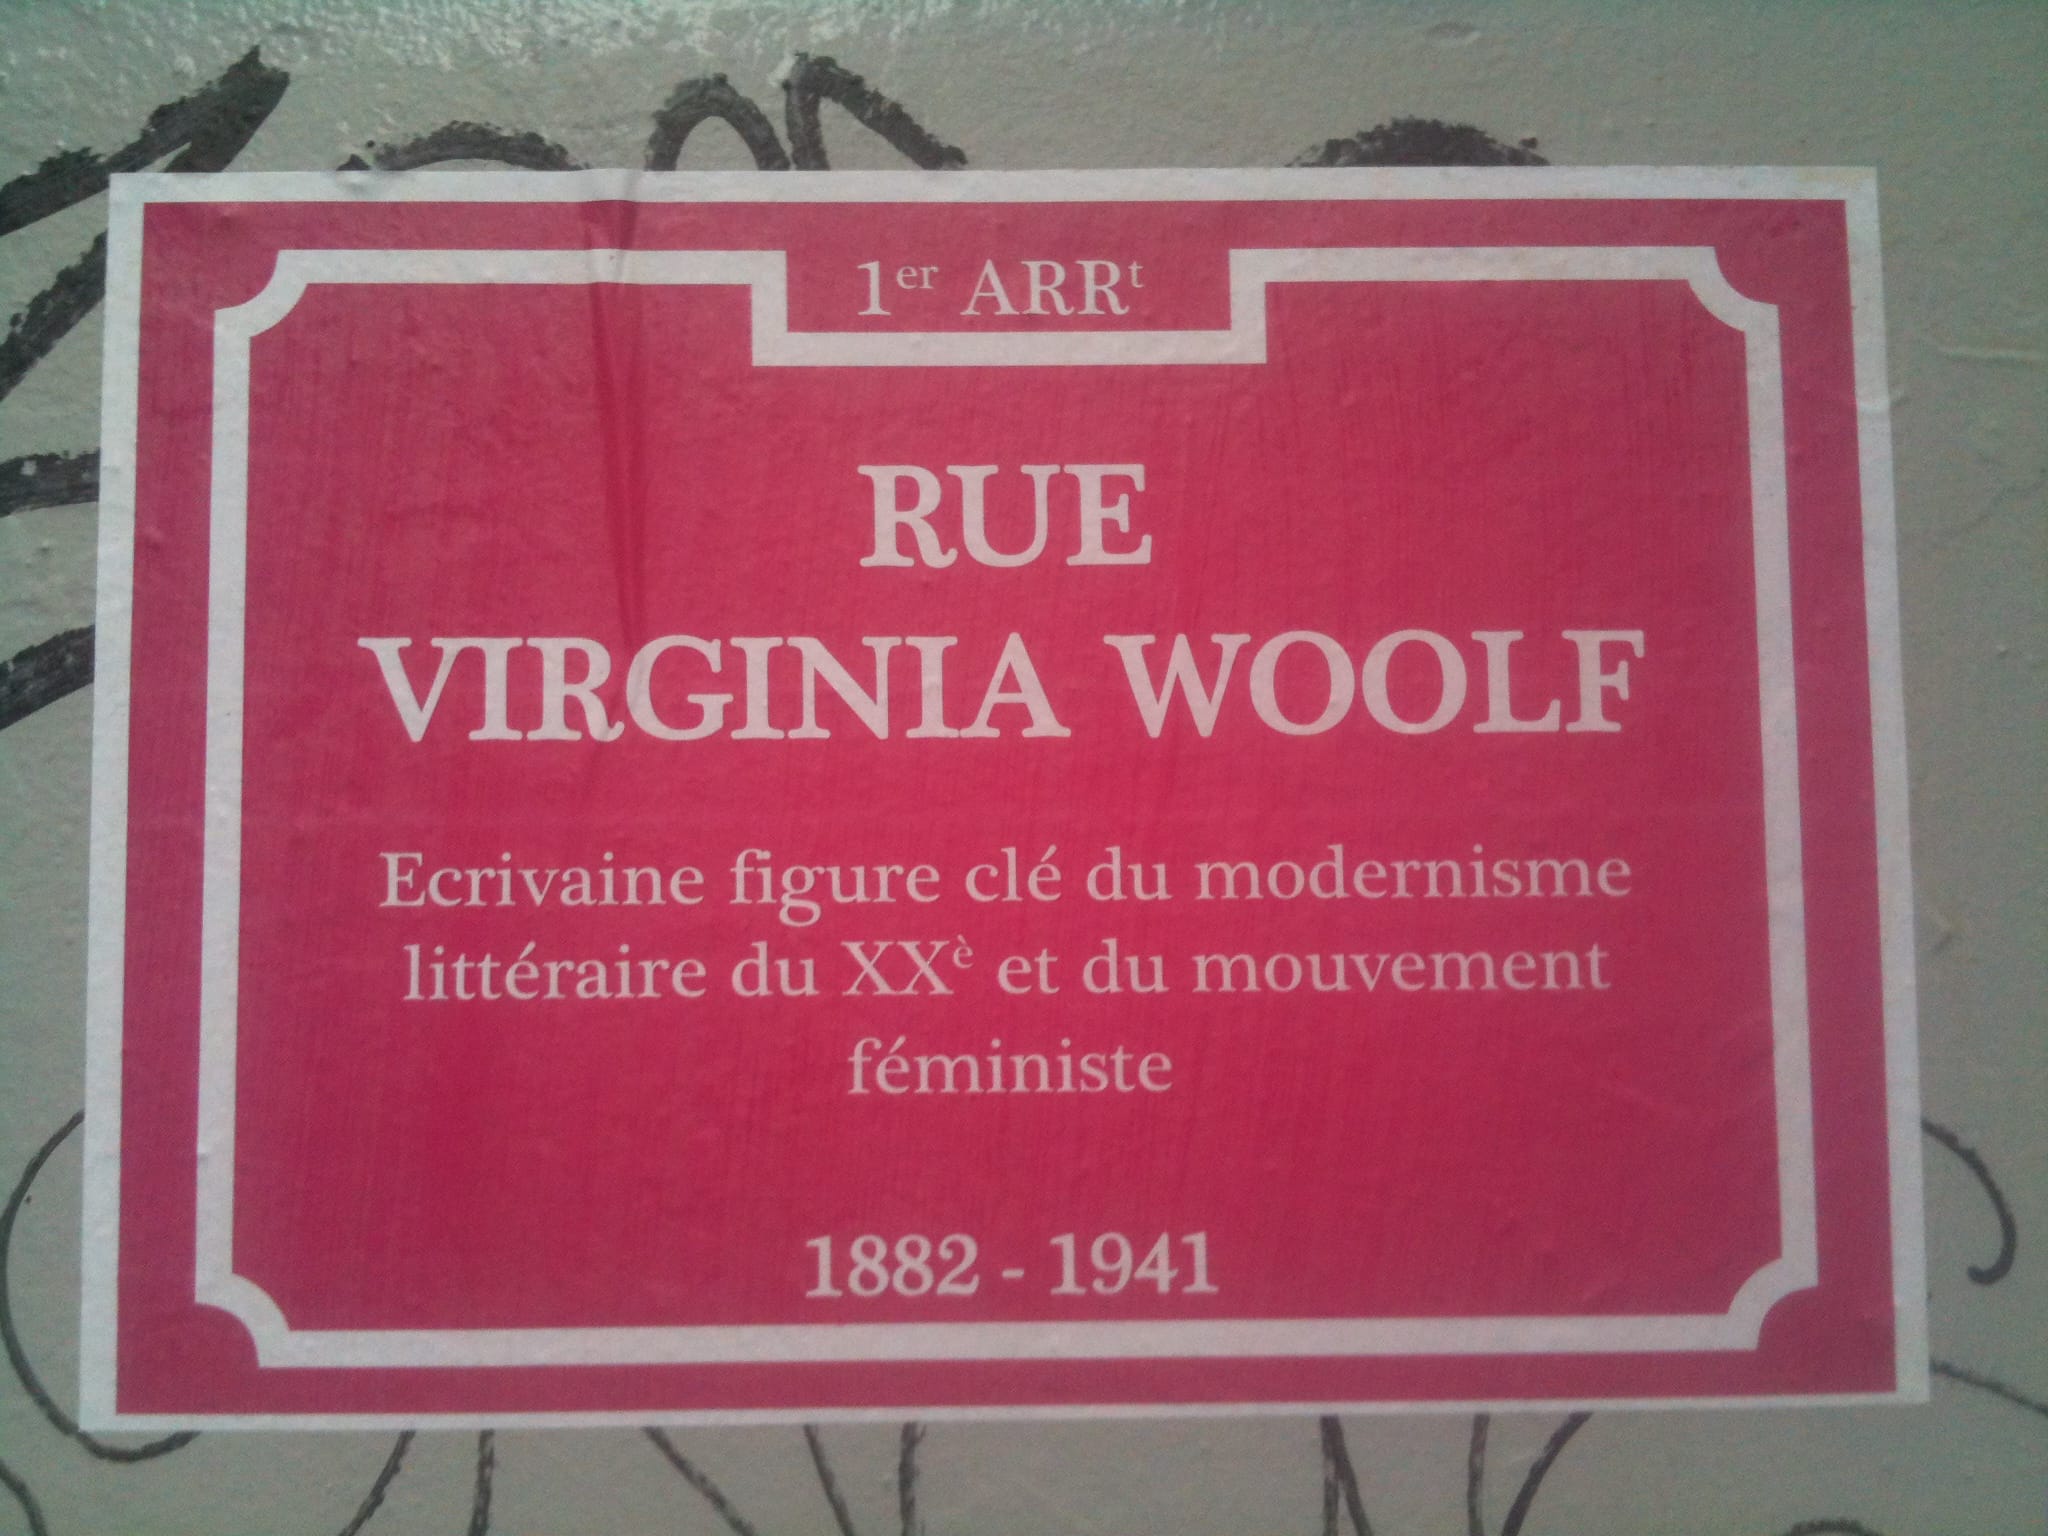 Les rues de Lyon rebaptisées avec des noms de femmes